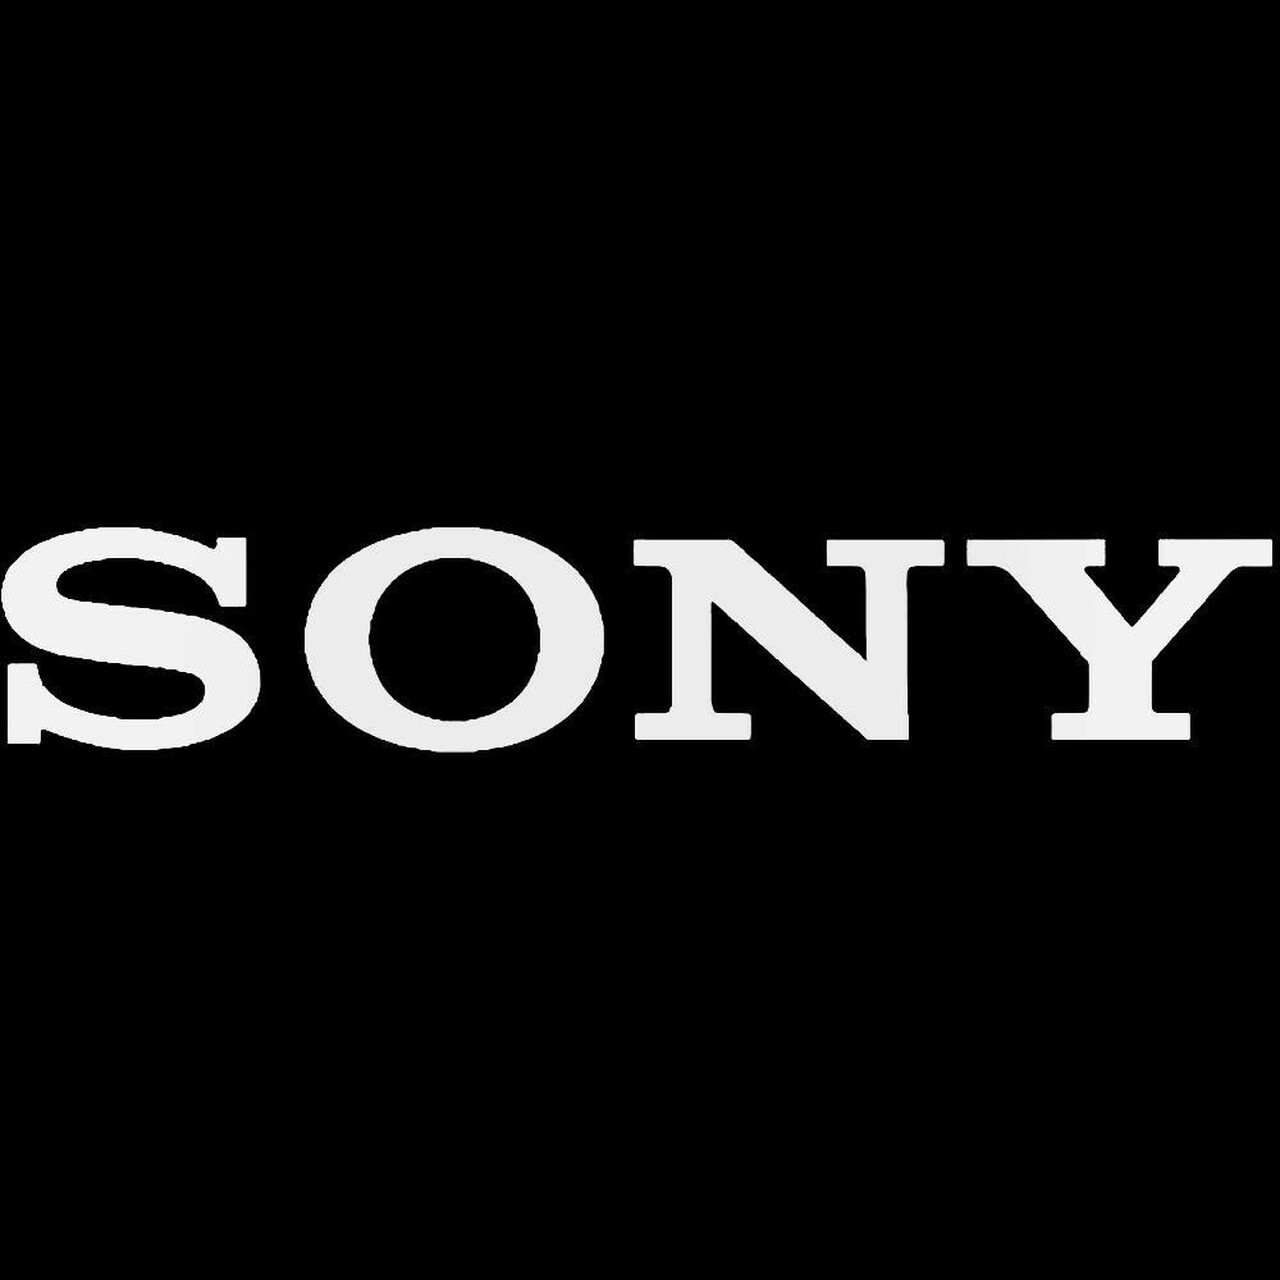 Sony Audio Decal Sticker